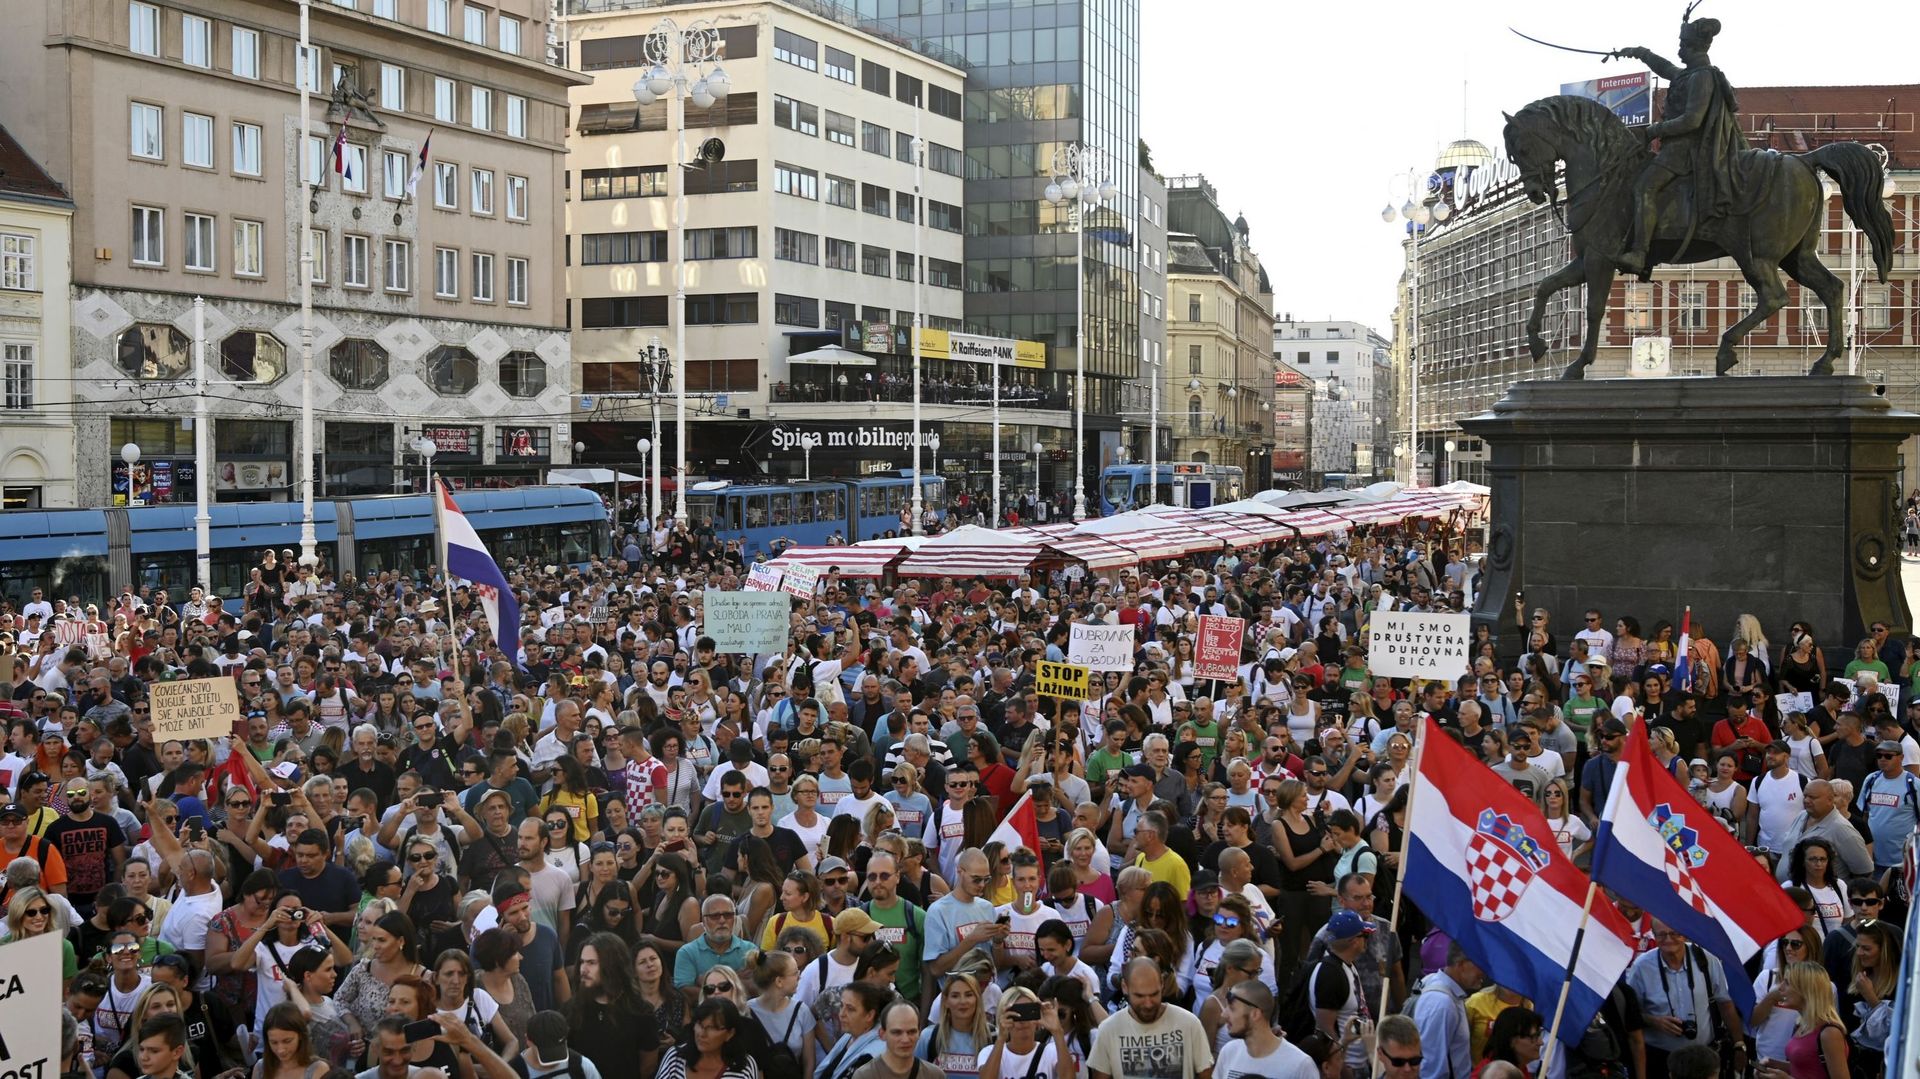 Le rassemblement a été baptisé "Festival de la liberté" par les organisateurs.